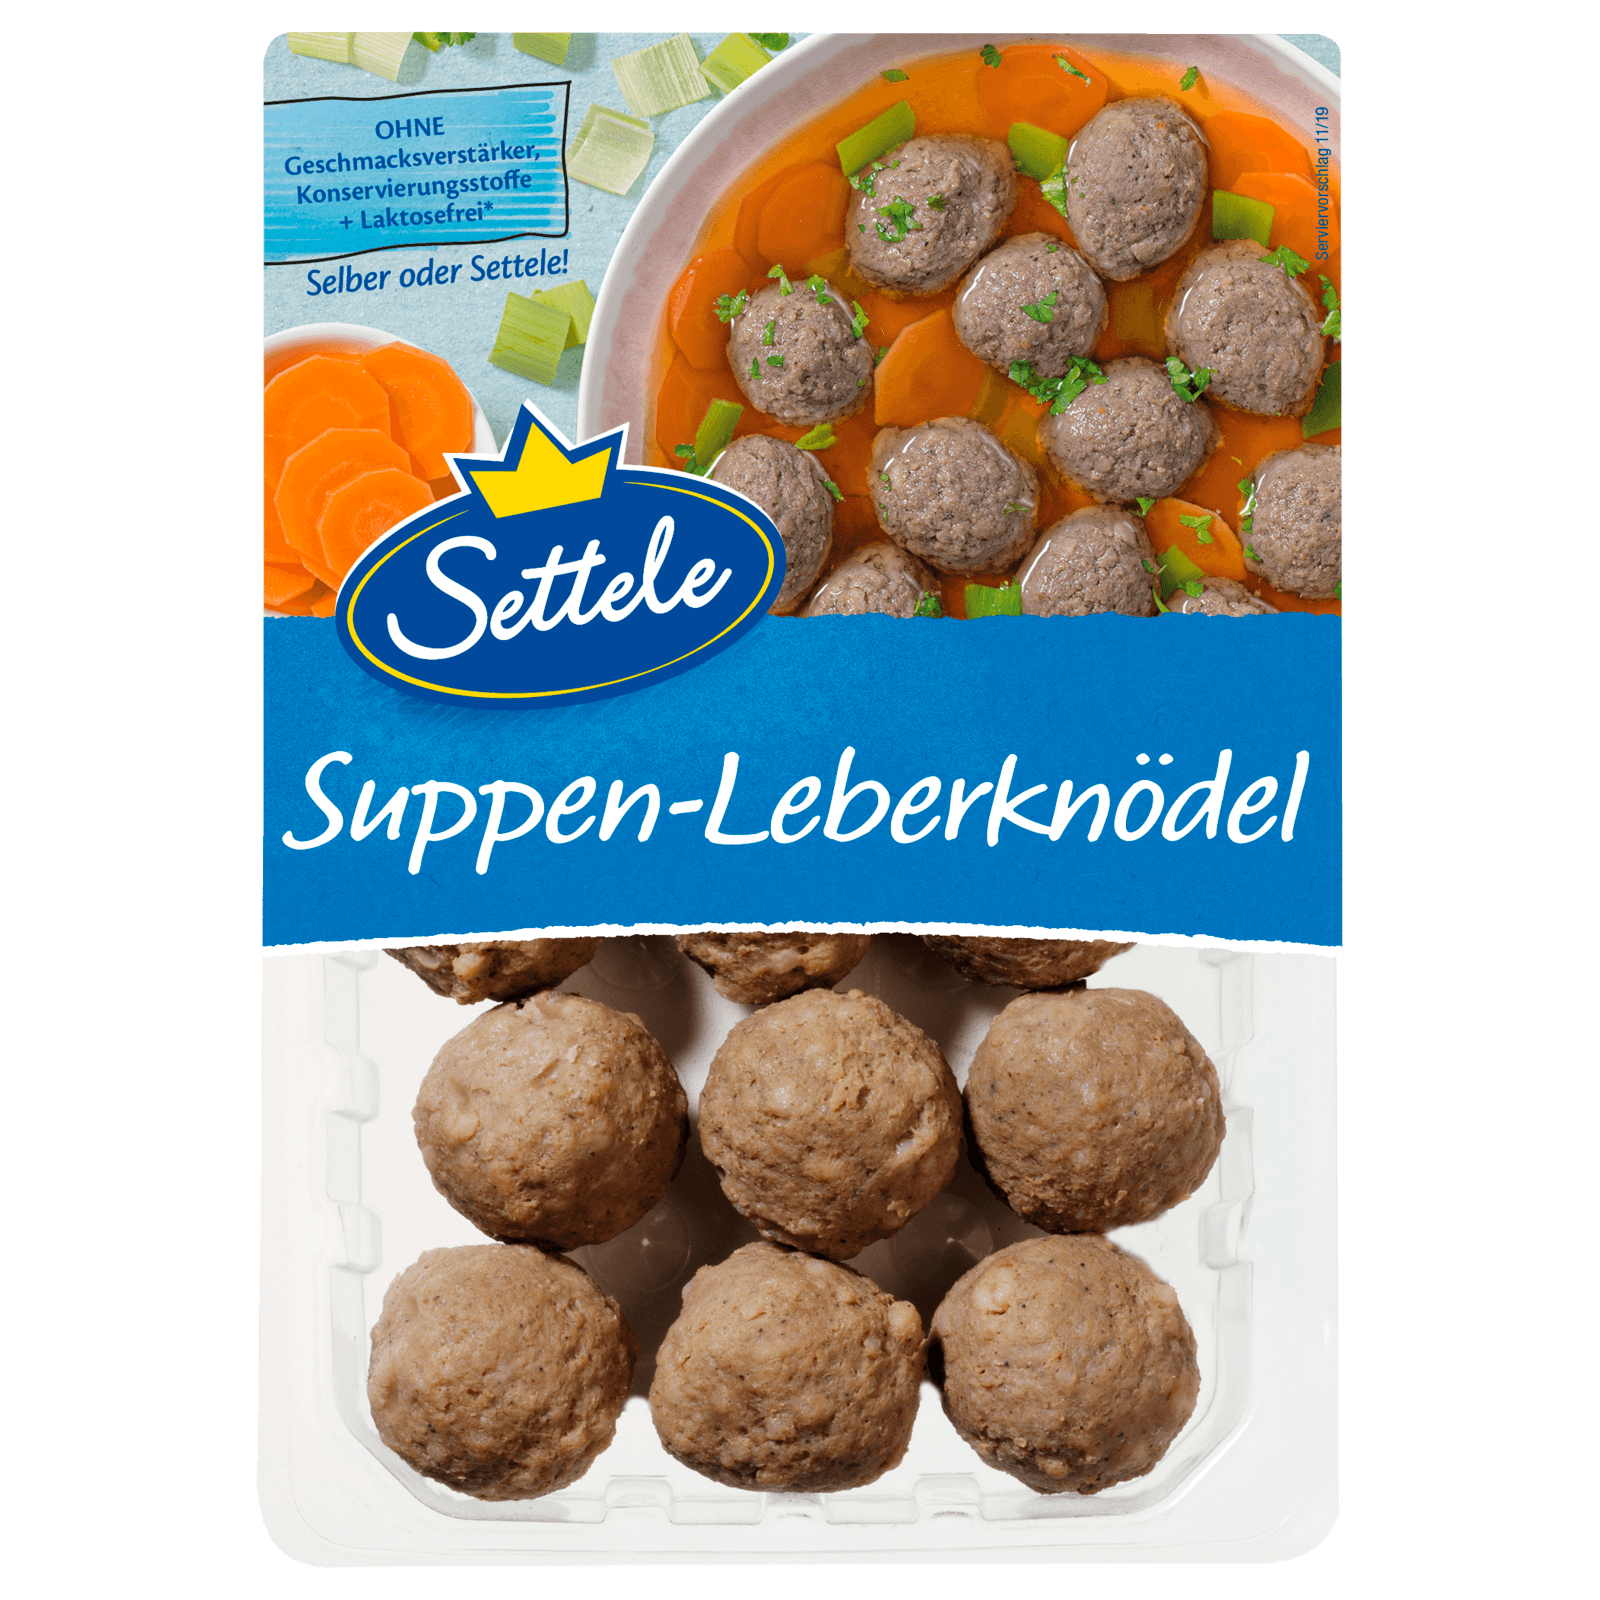 Settele Suppen-Leberknödel 300g  für 2.49 EUR